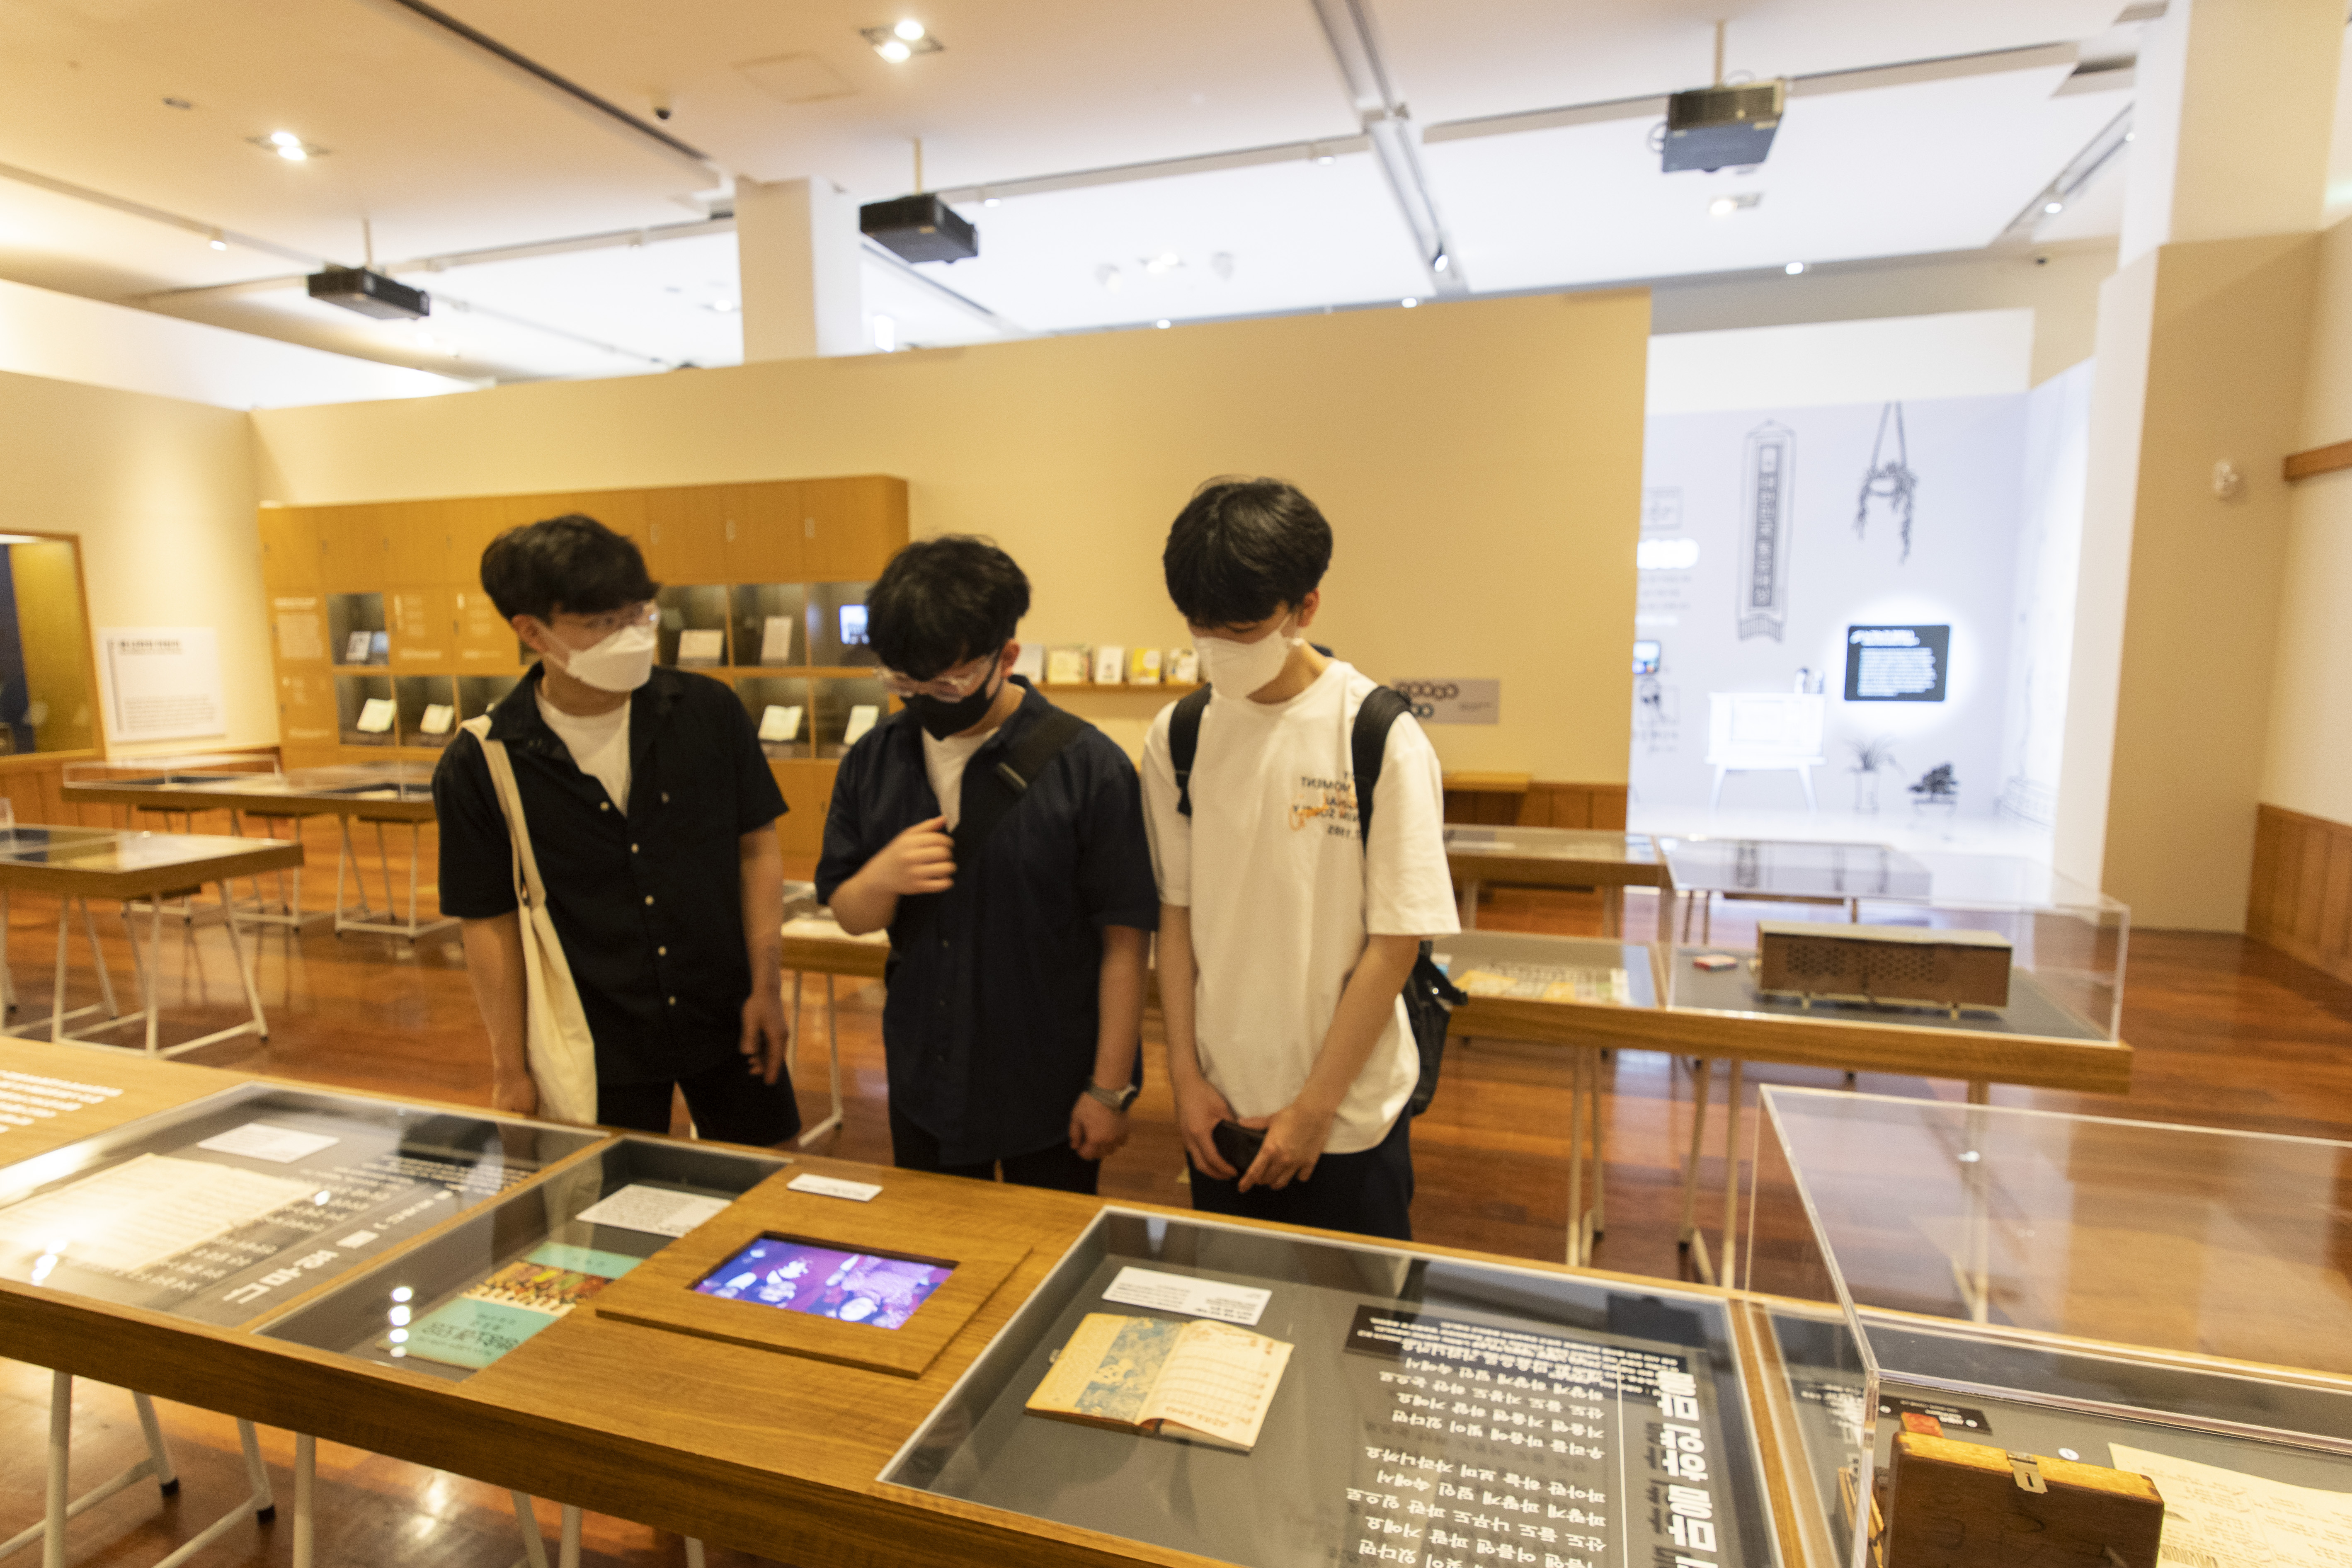 12일 국립한글박물관을 찾은 학생들이 동요의 역사를 살피고 있다. 류재민 기자 phoem@seoul.co.kr